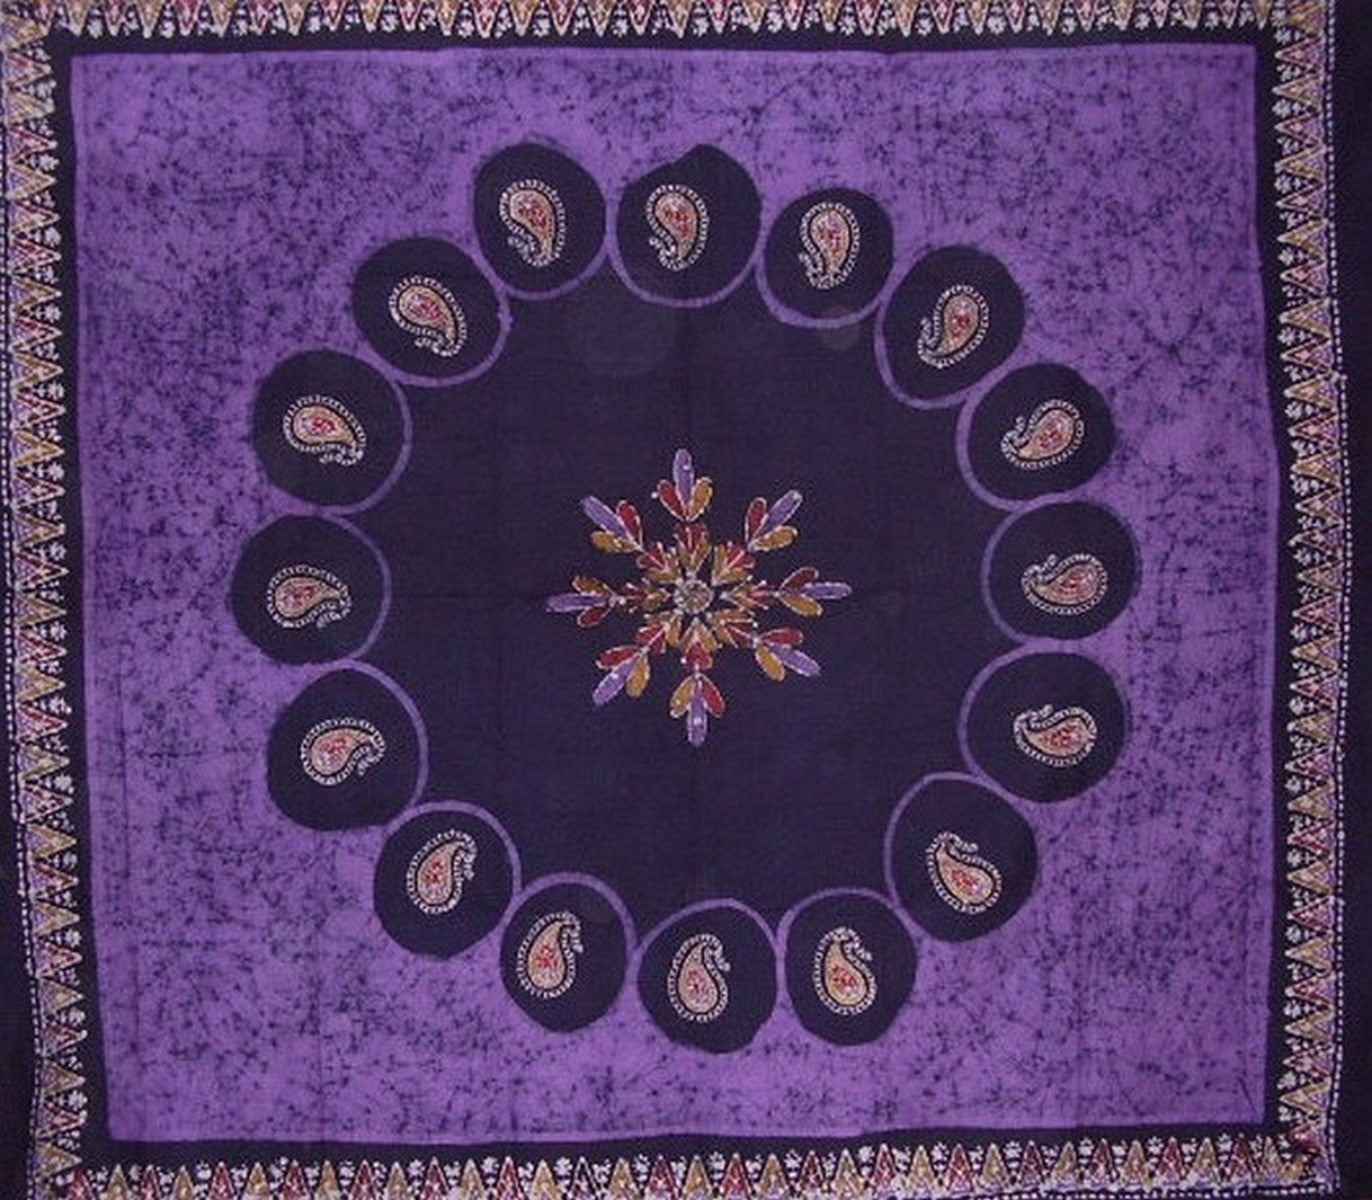 Seprai Katun Permadani Batik 108" x 108" Queen-King Ungu